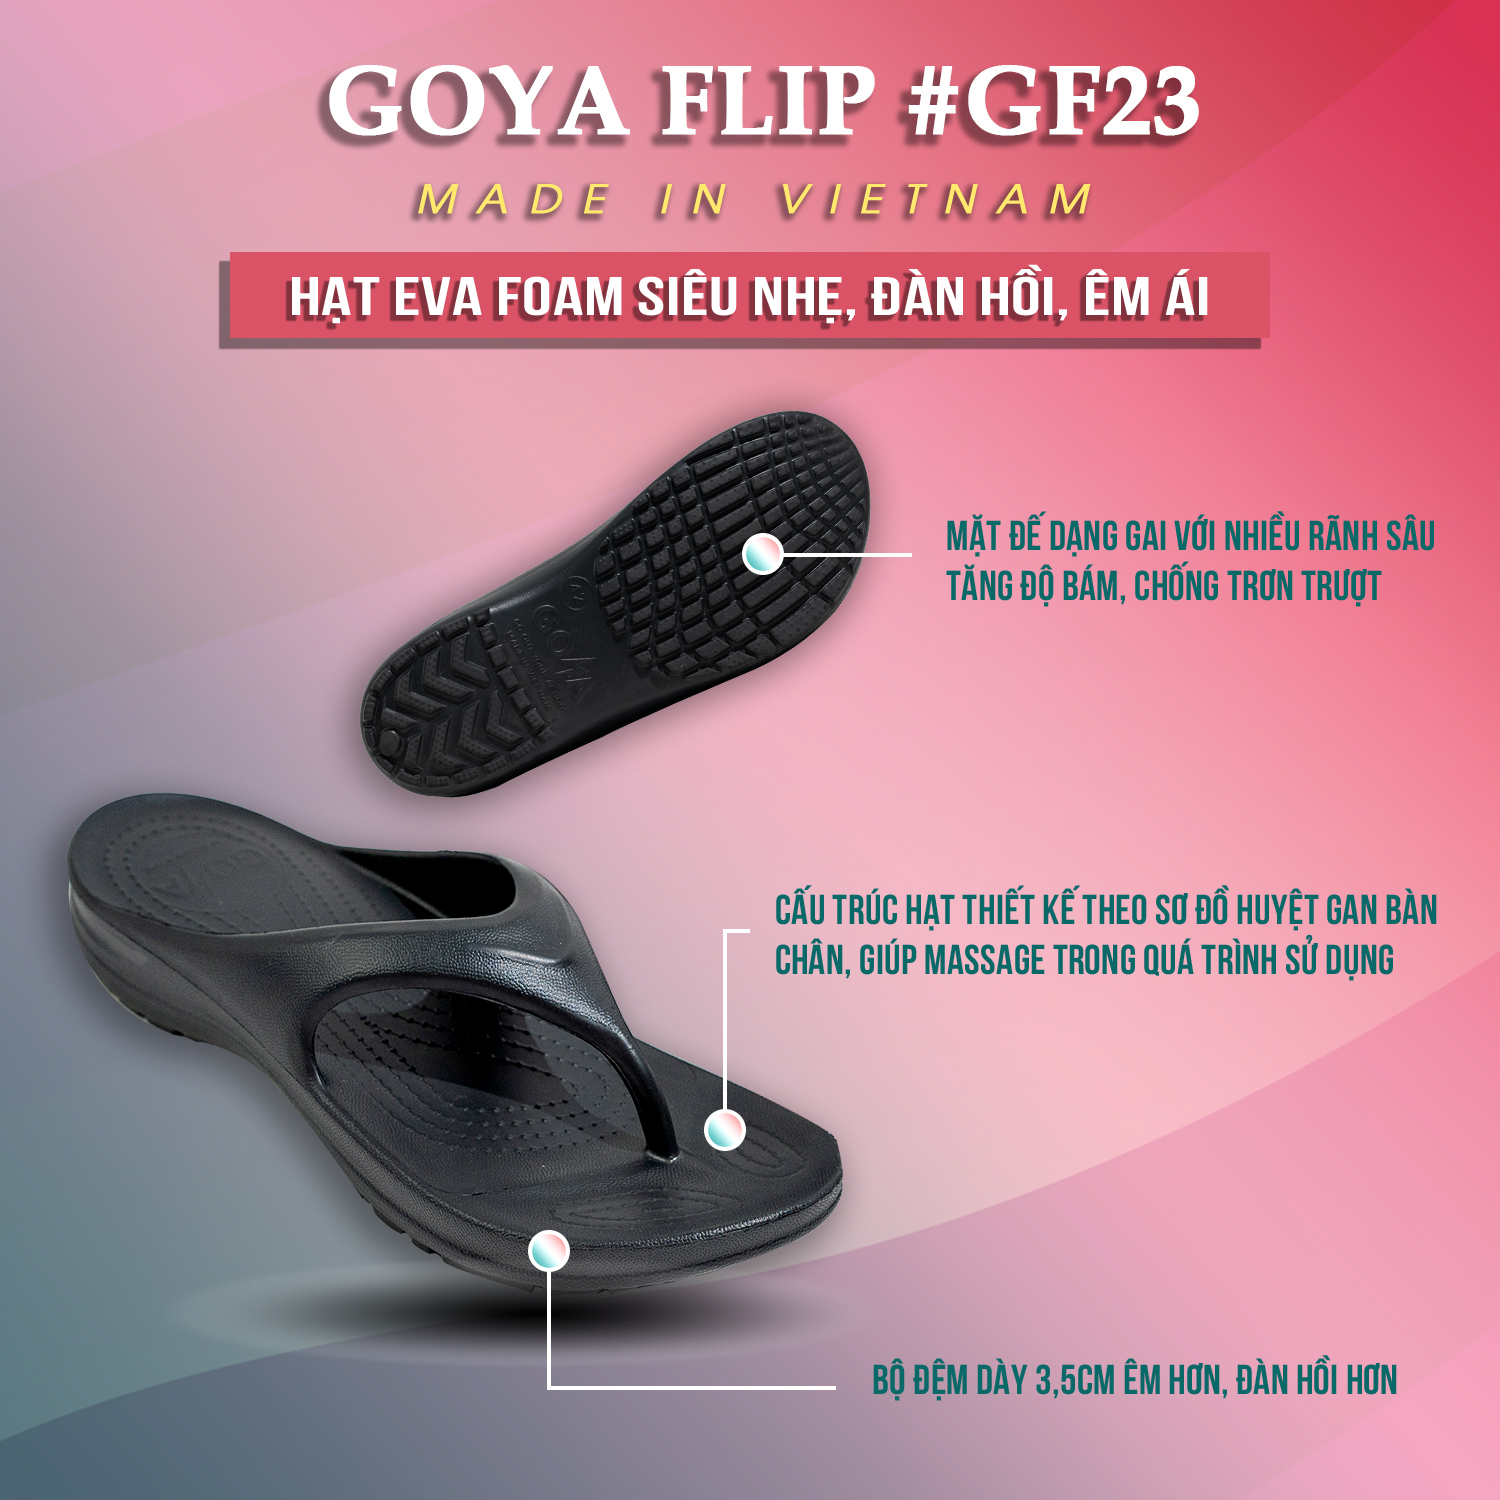 [HOT] Dép Thể thao chạy bộ Goya Flip GF23 - Màu Đen